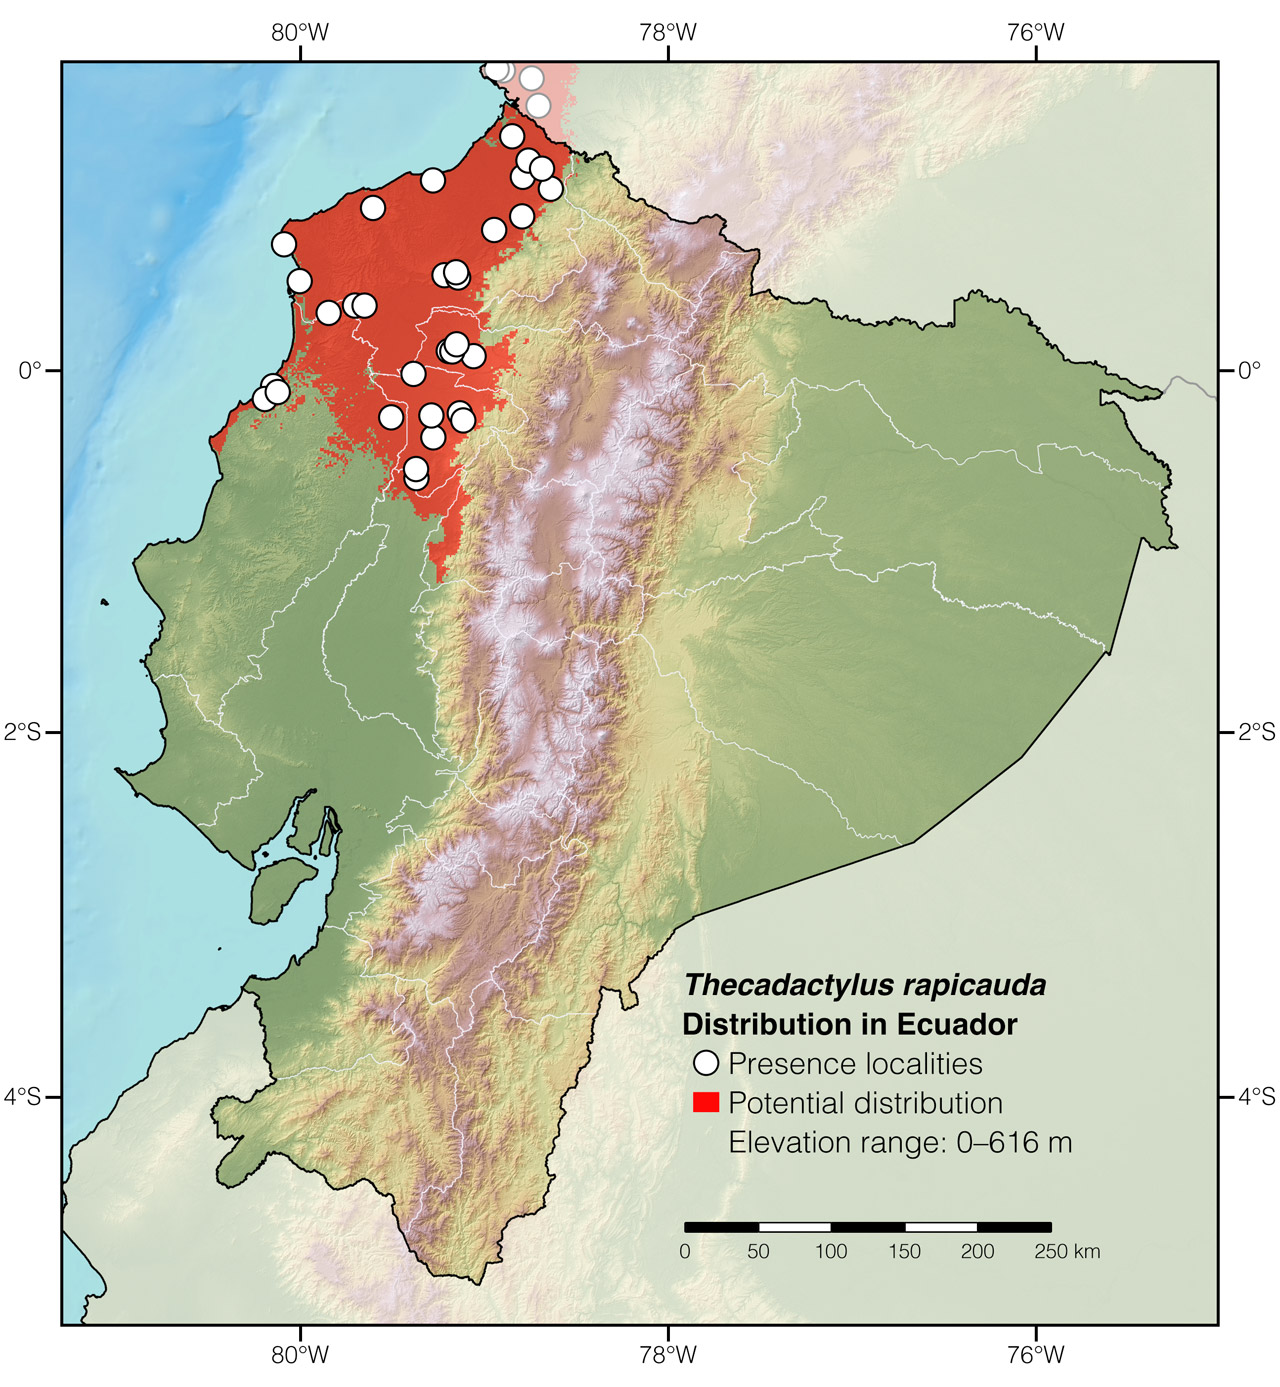 Distribution of Thecadactylus rapicauda in continental Ecuador